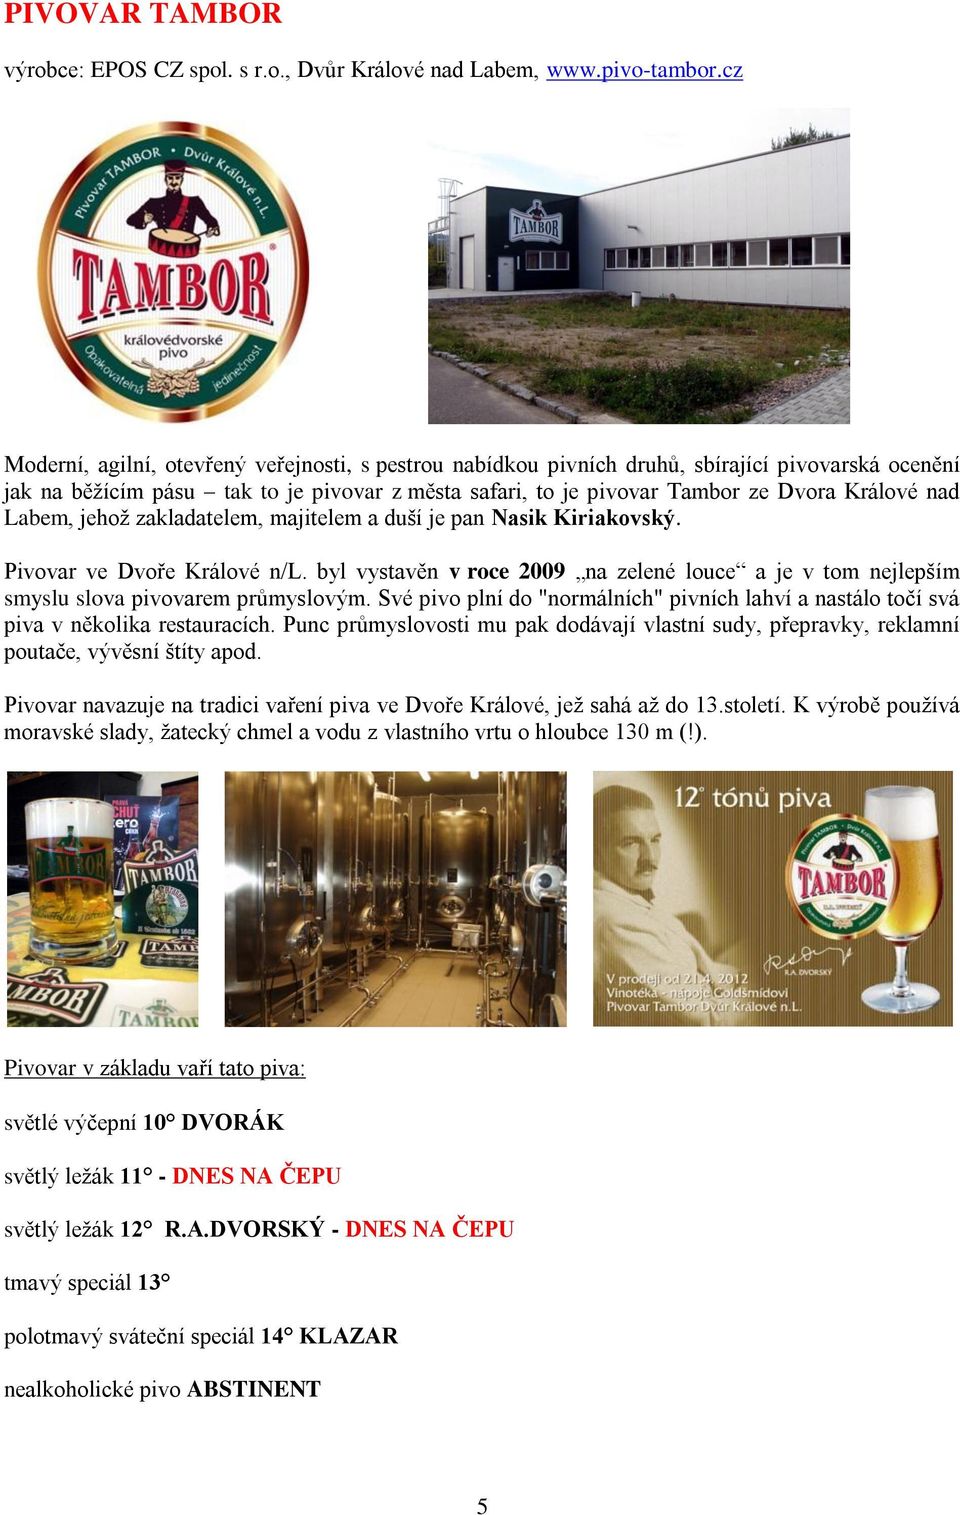 Labem, jehož zakladatelem, majitelem a duší je pan Nasik Kiriakovský. Pivovar ve Dvoře Králové n/l. byl vystavěn v roce 2009 na zelené louce a je v tom nejlepším smyslu slova pivovarem průmyslovým.